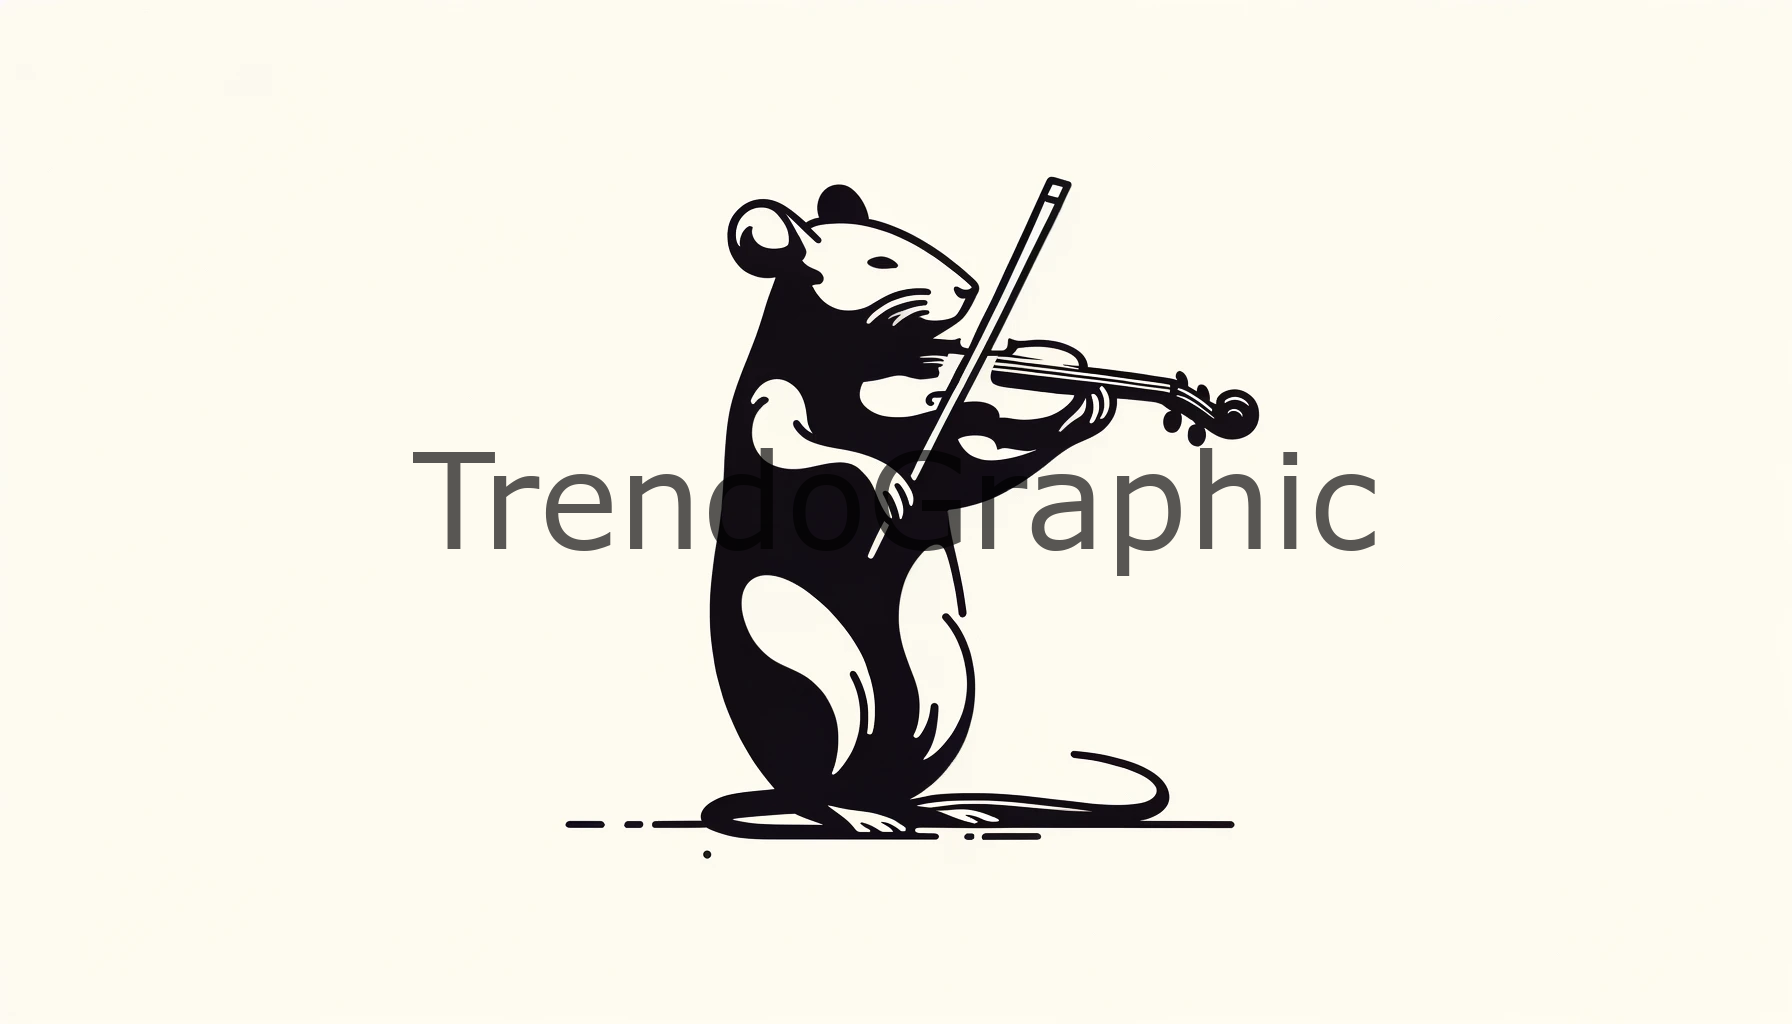 Violin Virtuoso: The Rat’s Artistic Expression